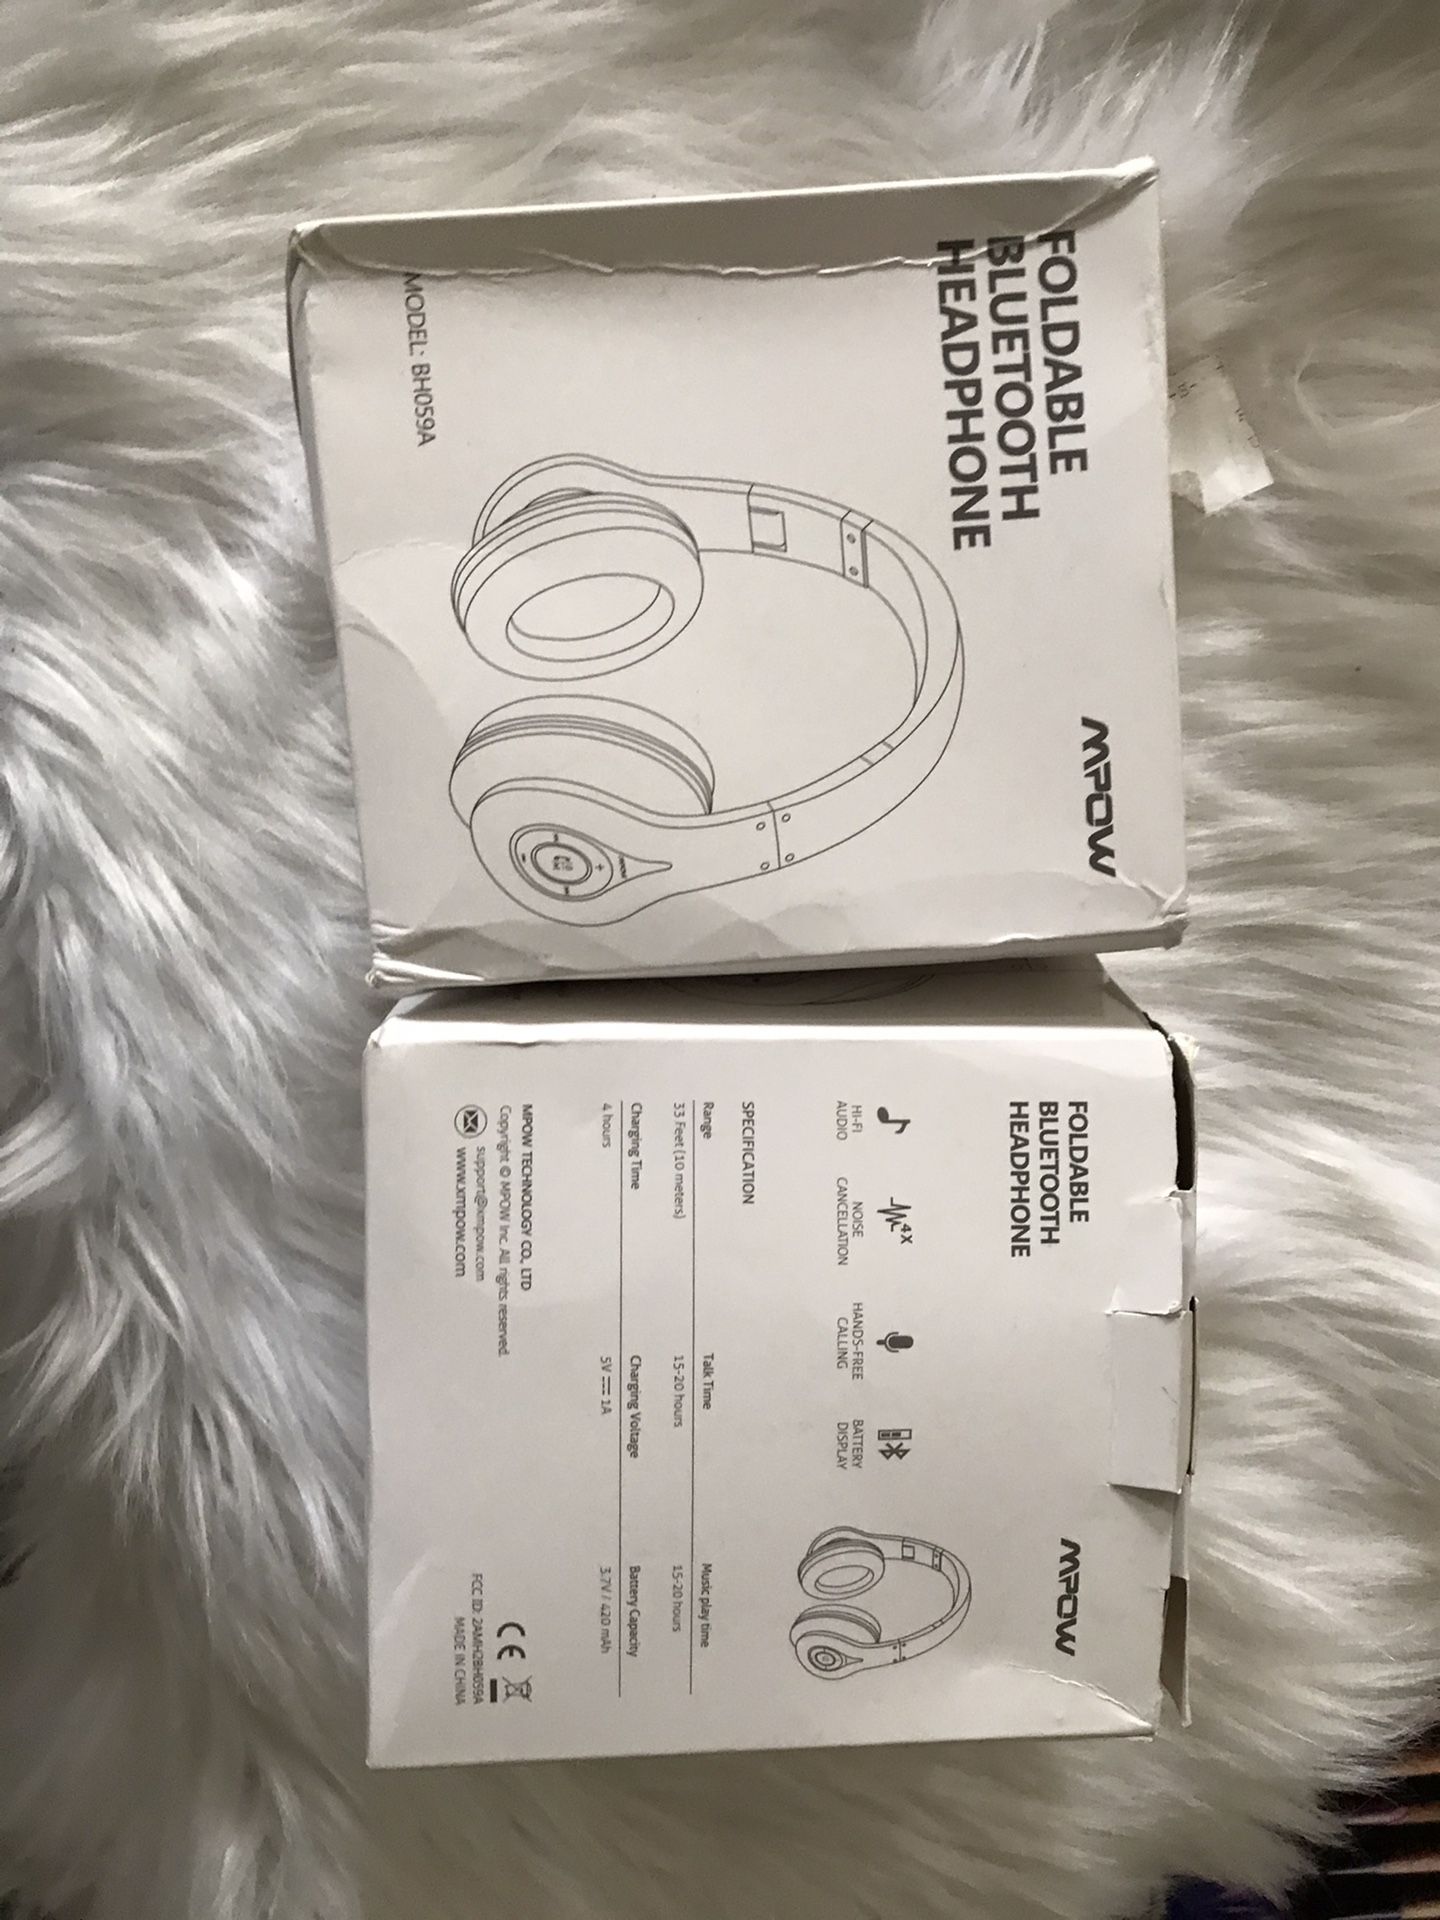 New headphones